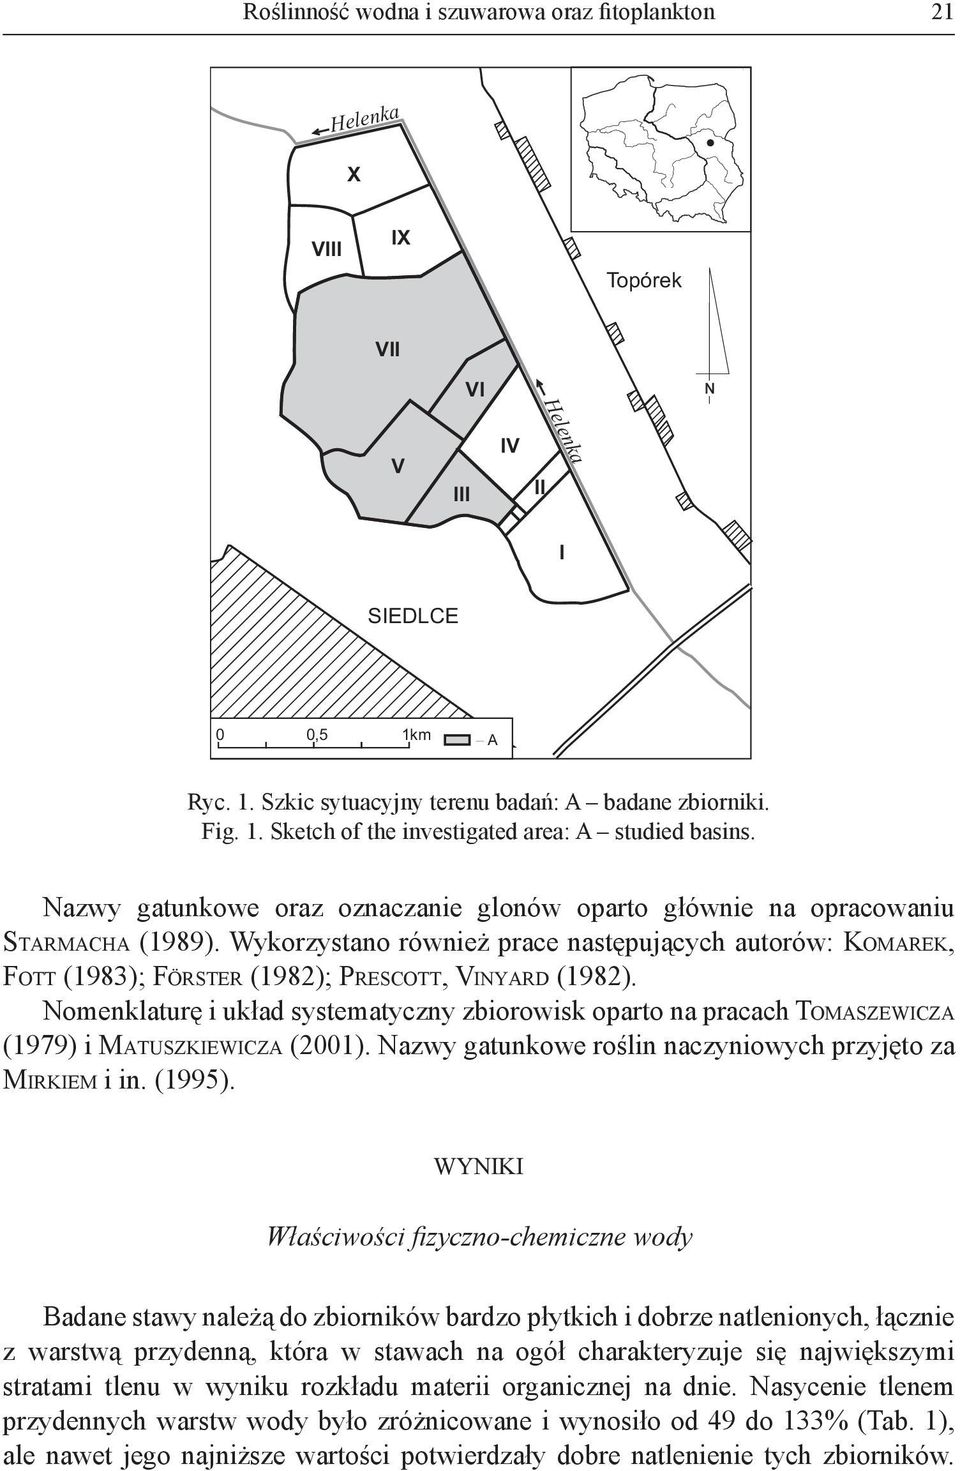 Nomenklaturę i układ systematyczny zbiorowisk oparto na pracach TOMASZEWICZA (1979) i MATUSZKIEWICZA (2001). Nazwy gatunkowe roślin naczyniowych przyjęto za MIRKIEM i in. (1995).